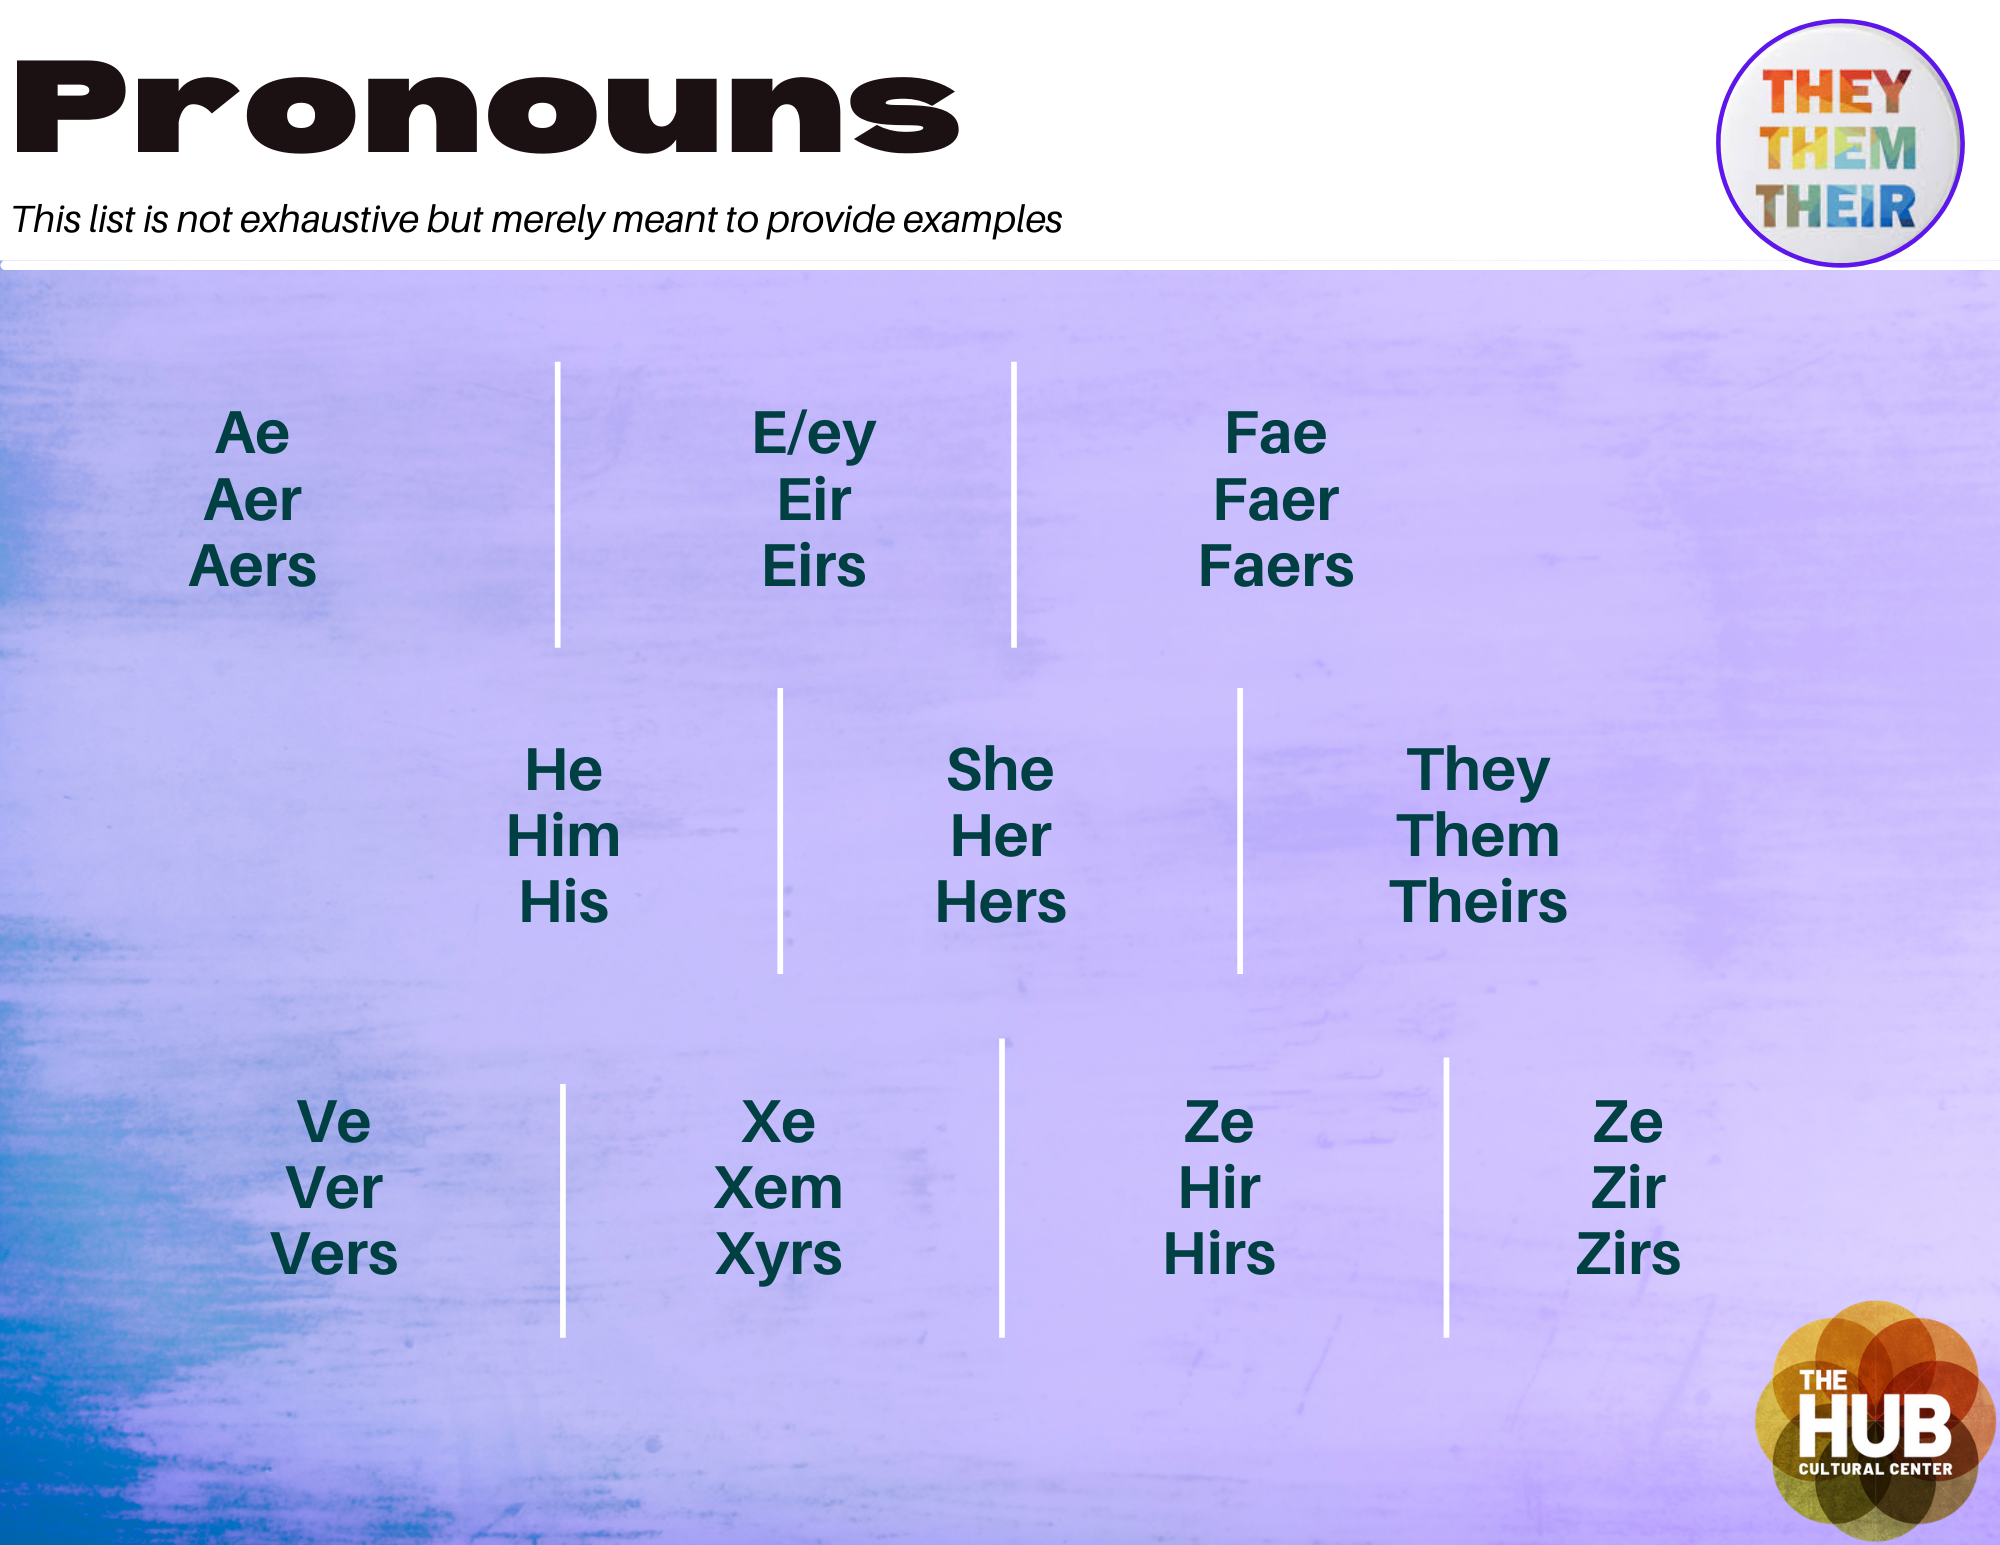 Pronouns include: ae, aer, e/eir, fae, faer